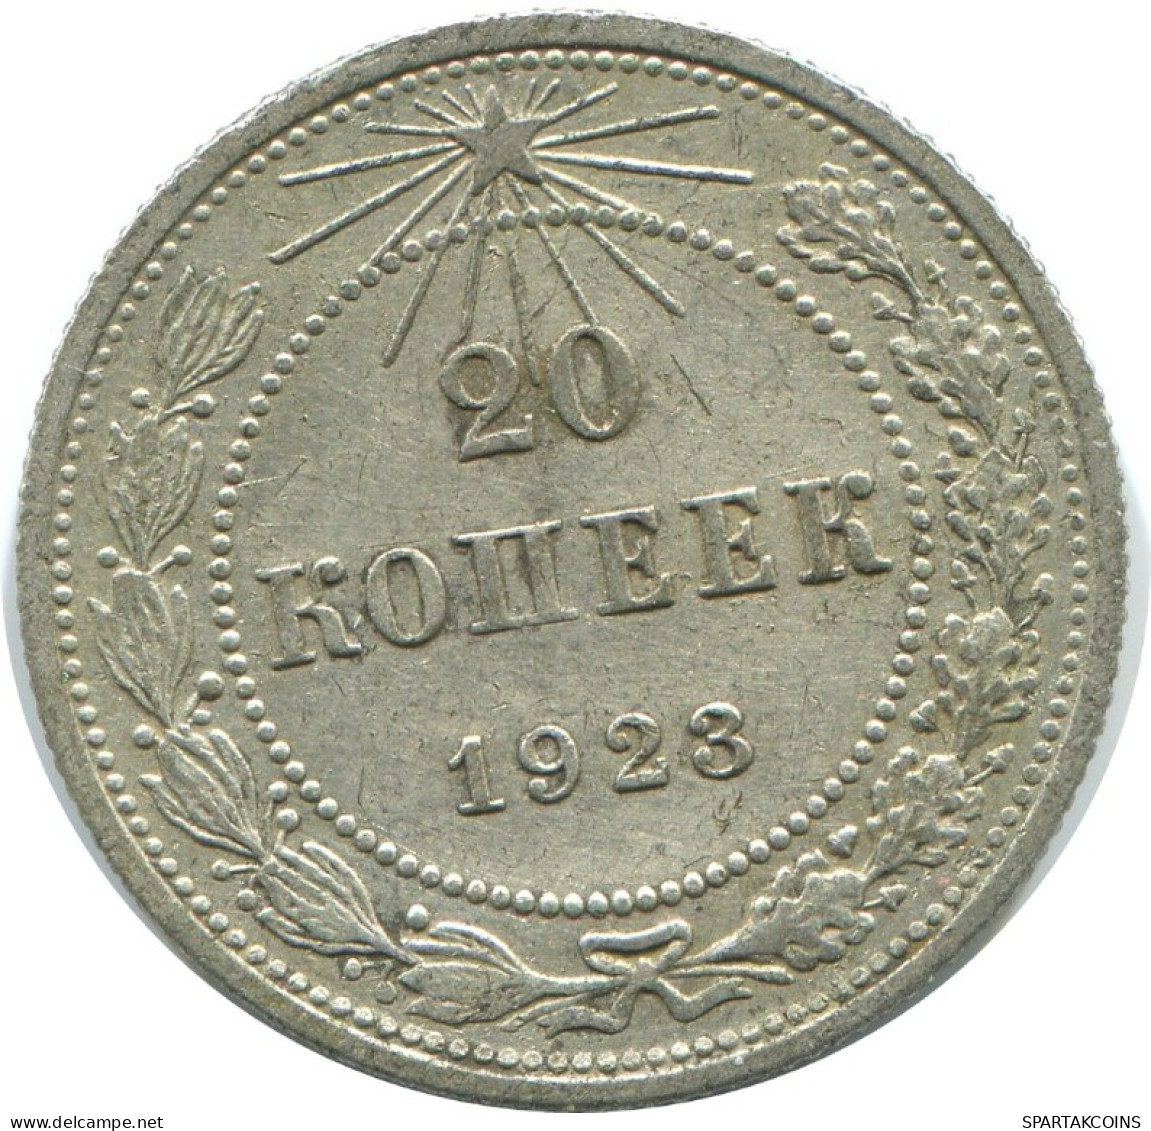 20 KOPEKS 1923 RUSSIA RSFSR SILVER Coin HIGH GRADE #AF504.4.U.A - Russland